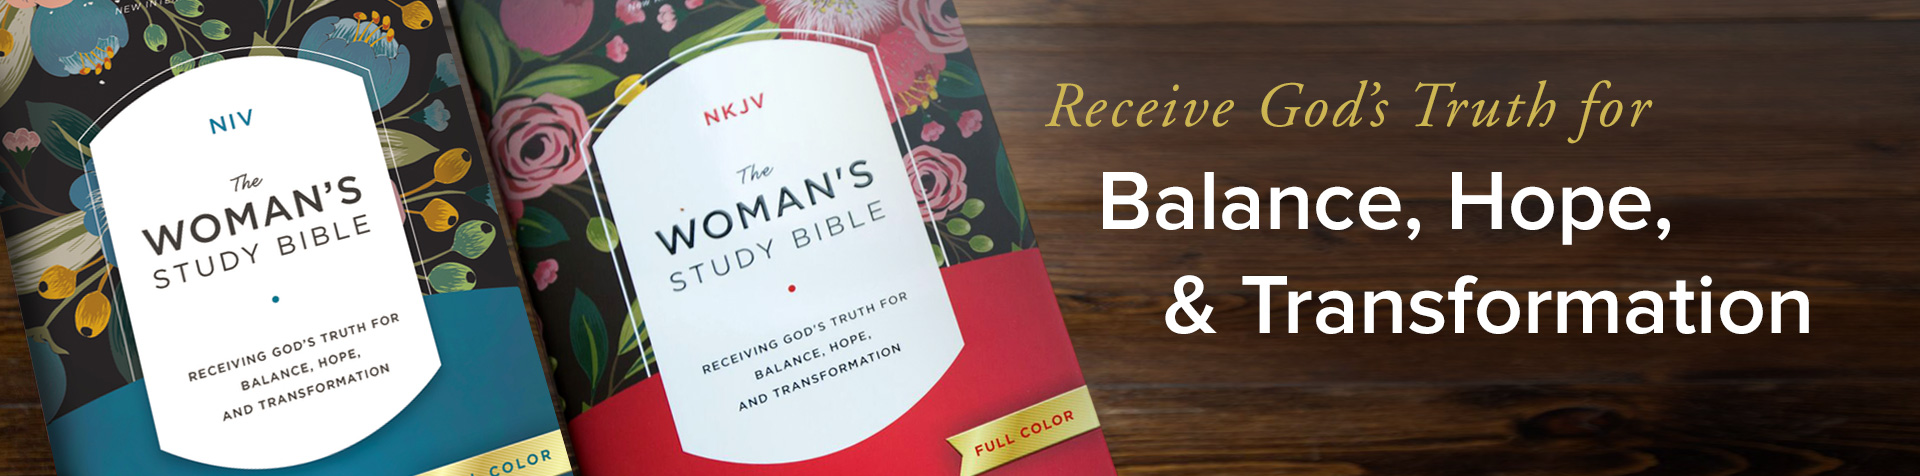 Woman's Study Bible NIV, NKJV